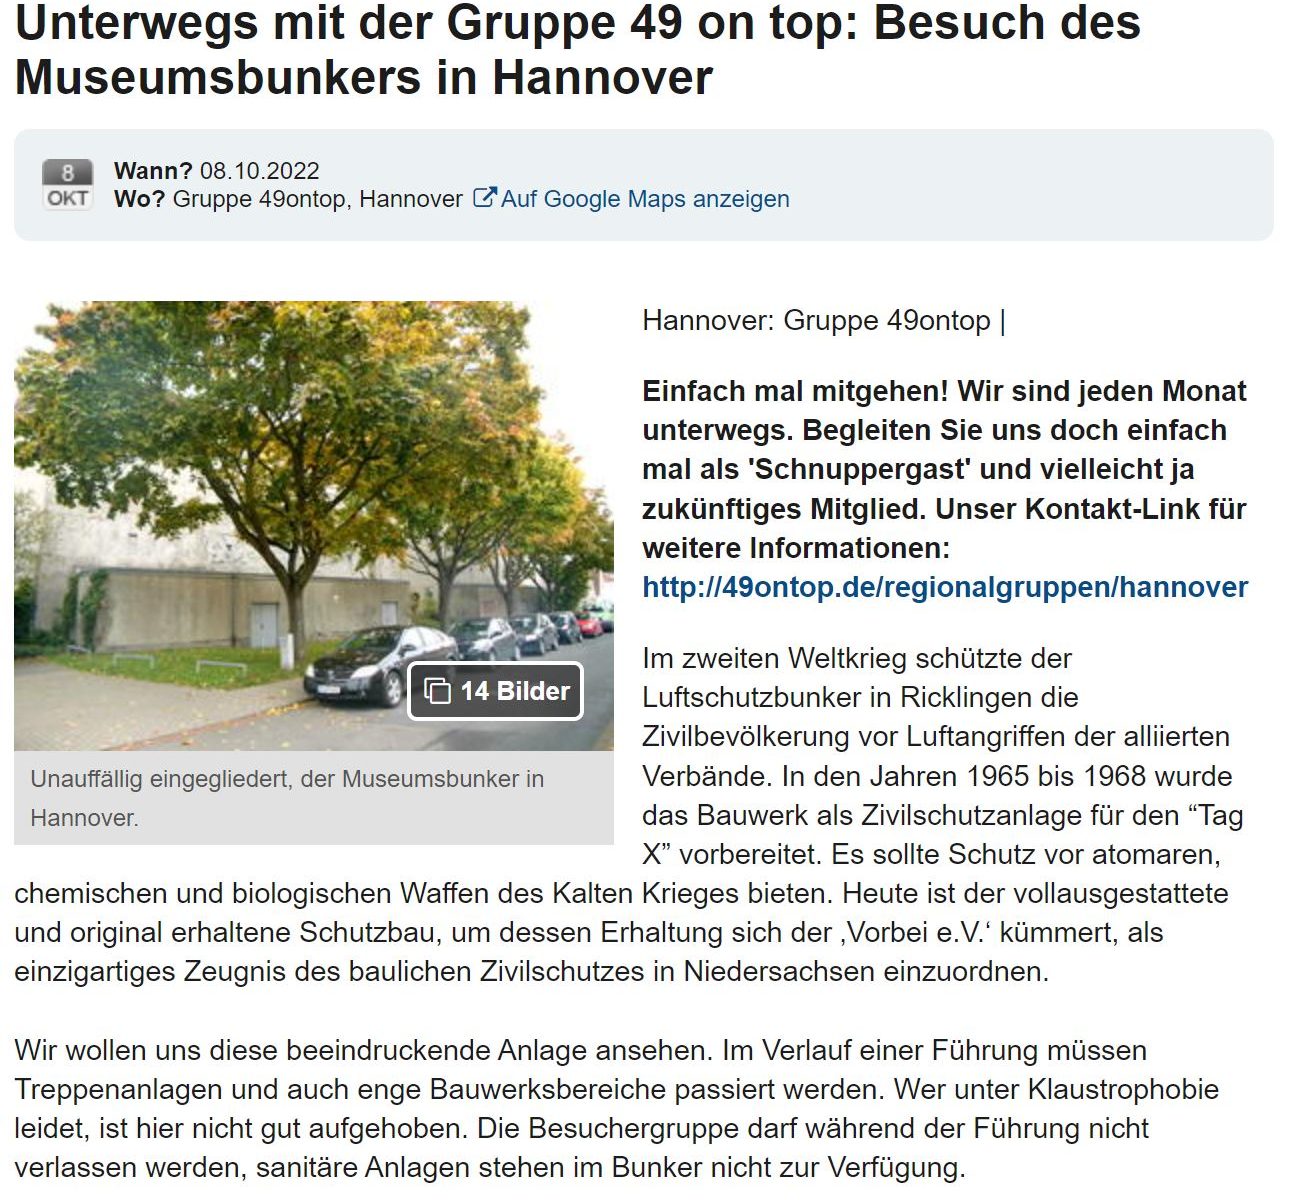 Ausschnitt eines Berichtes, den die Gruppe 49 on top über ihren Besuch im Museumsbunker Hannover auf der Plattform myheimat.de veröffentlicht hat.